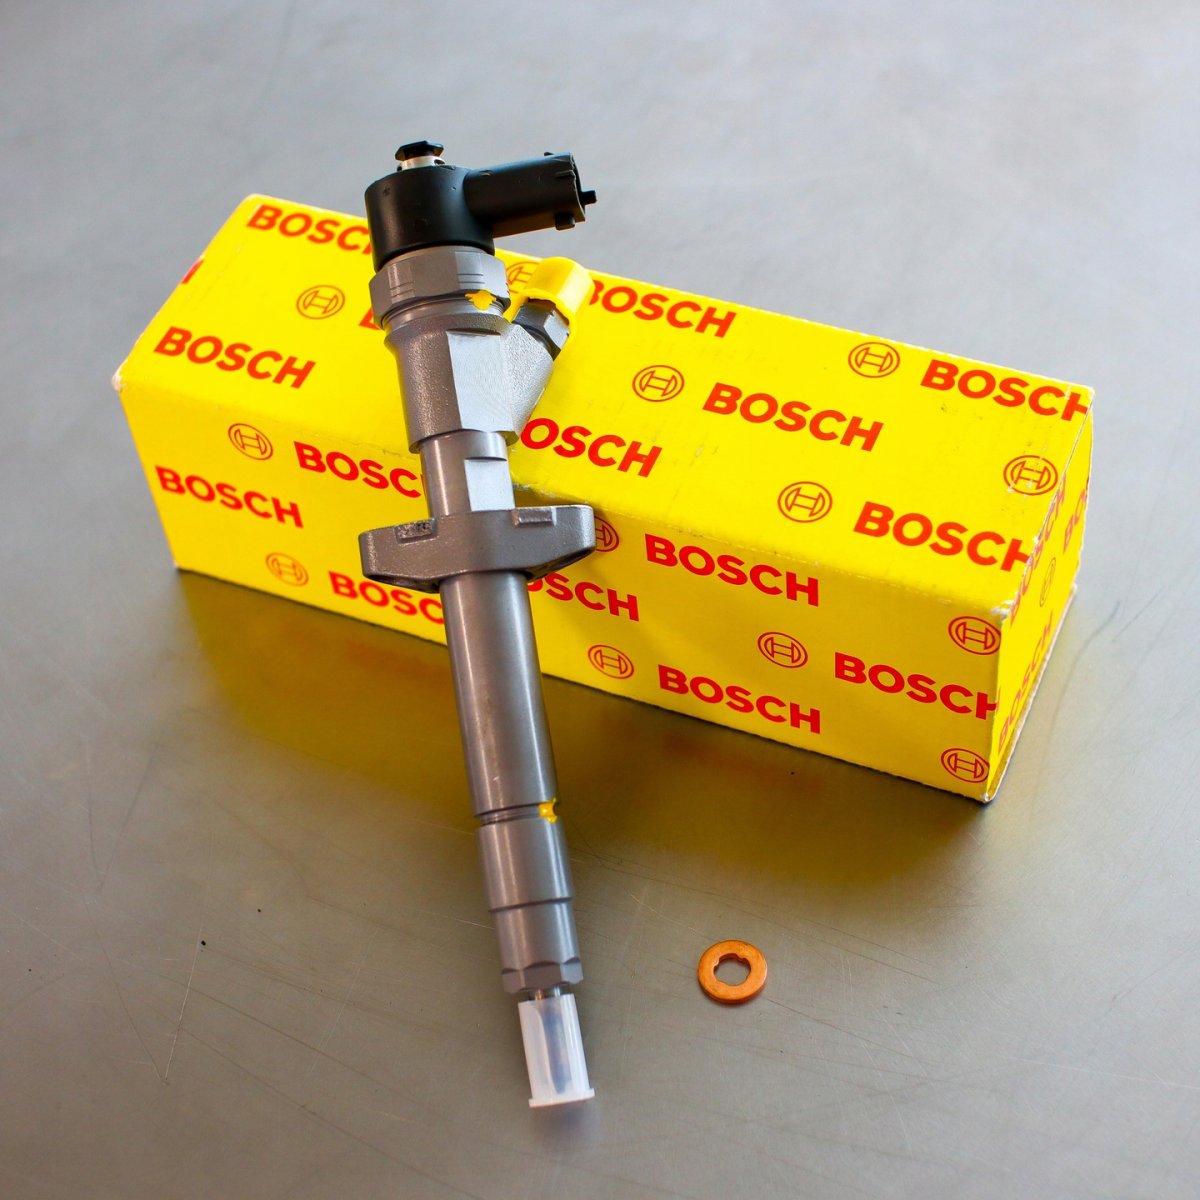 Wtryskiwacz Bosch naprawiony gotowy do wysłania do Klienta na gwarancji na okres 24 miesięcy w świetnej cenie